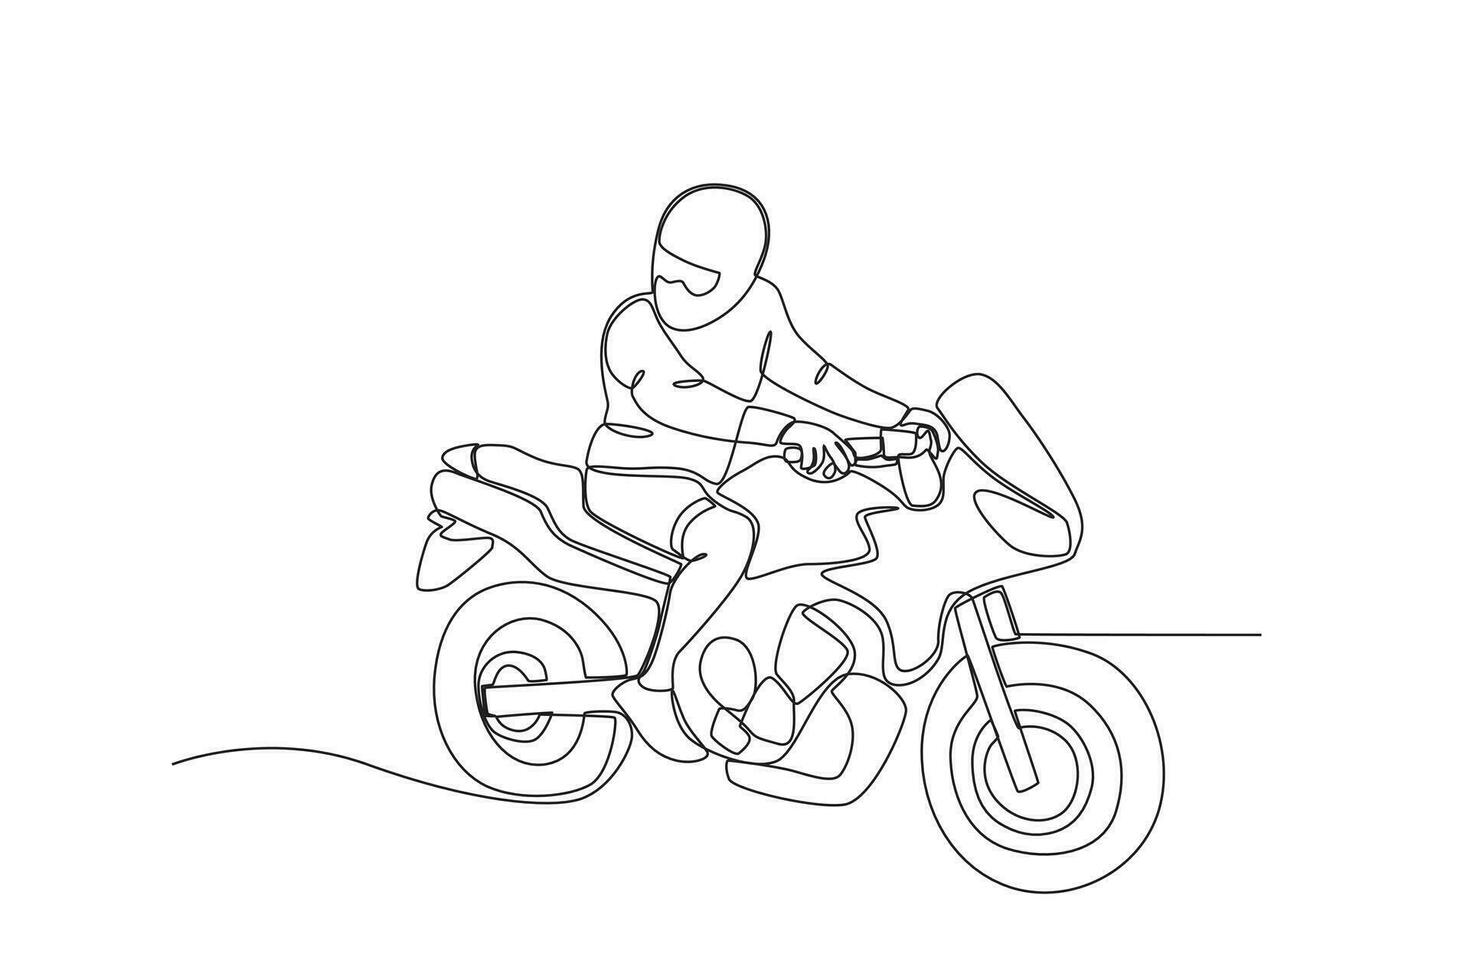 A racer riding a motorcycle vector